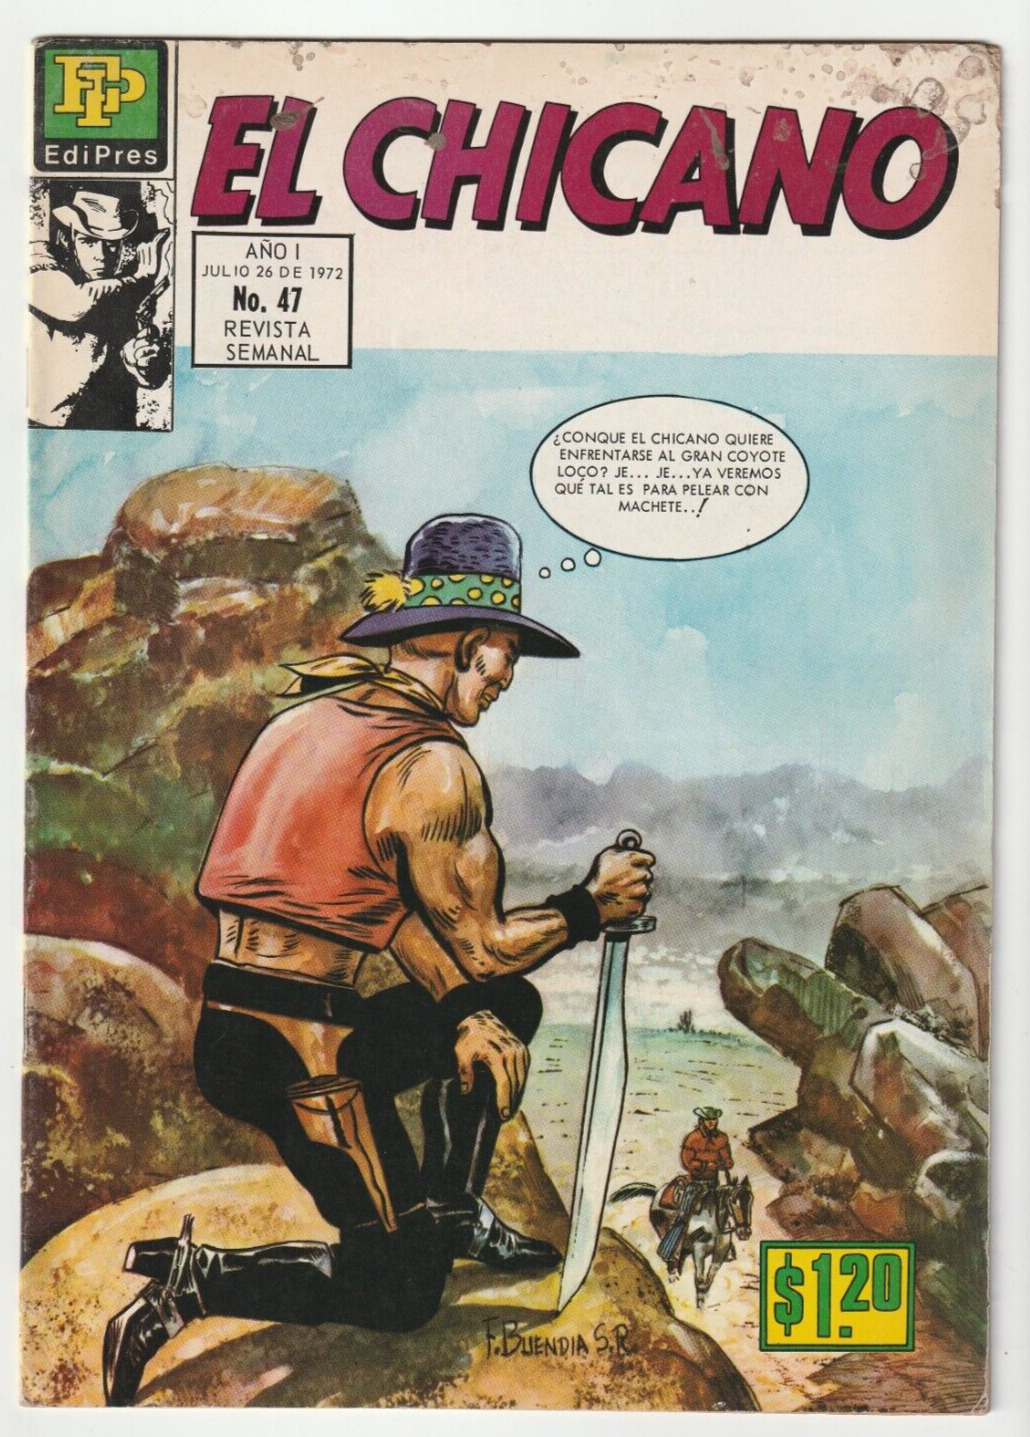 El Chicano #47 - EdiPres - Mexico 1972